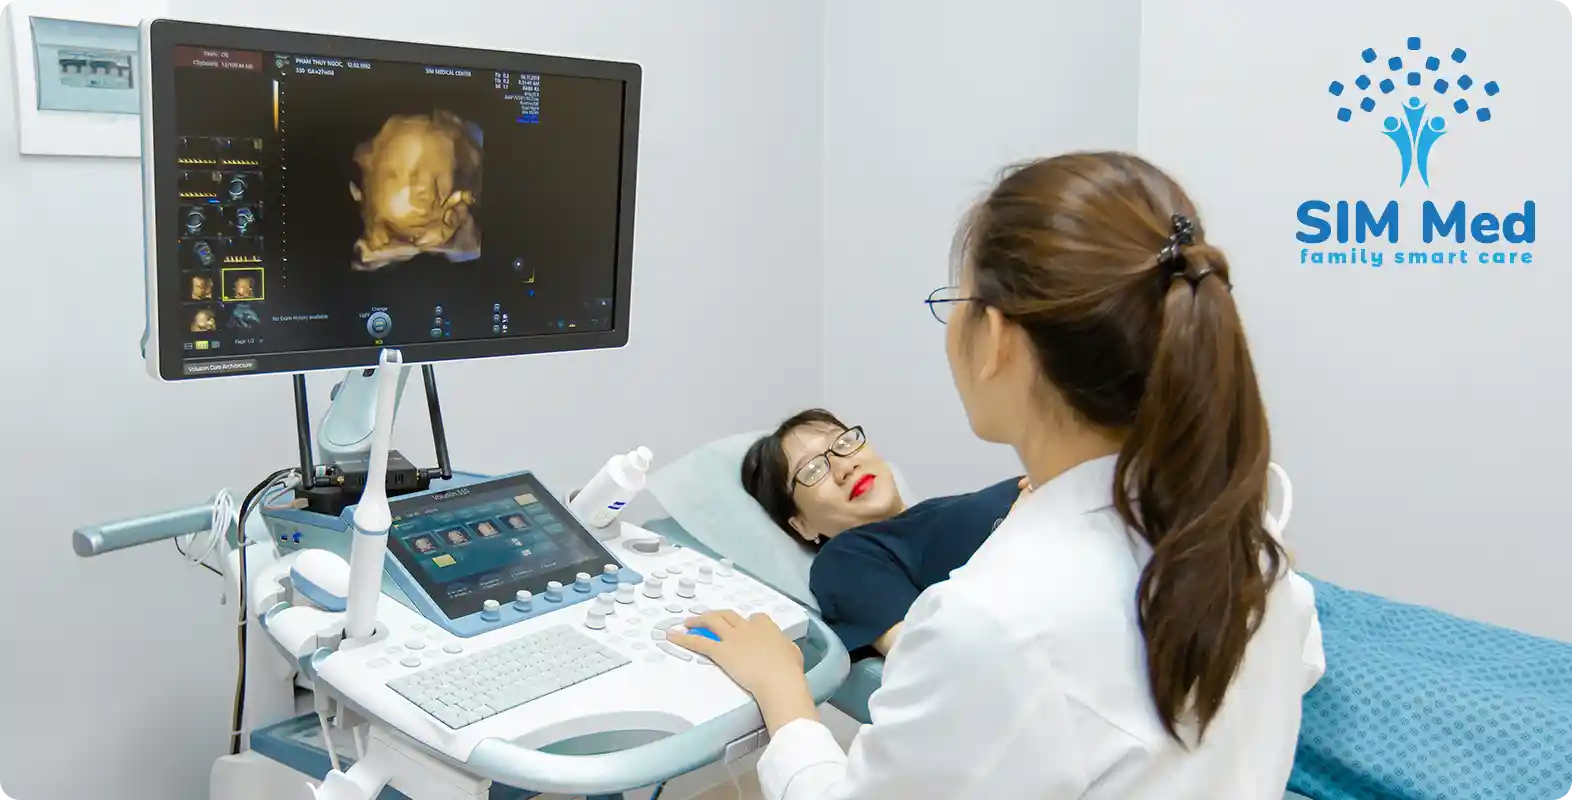 Khoa Sản tại SIM Medical Center cung cấp các dịch vụ thăm khám chẩn đoán, điều trị và tư vấn toàn bộ bệnh lý về sản khoa, hỗ trợ và chăm sóc mẹ bầu trong suốt thời kỳ mang thai.